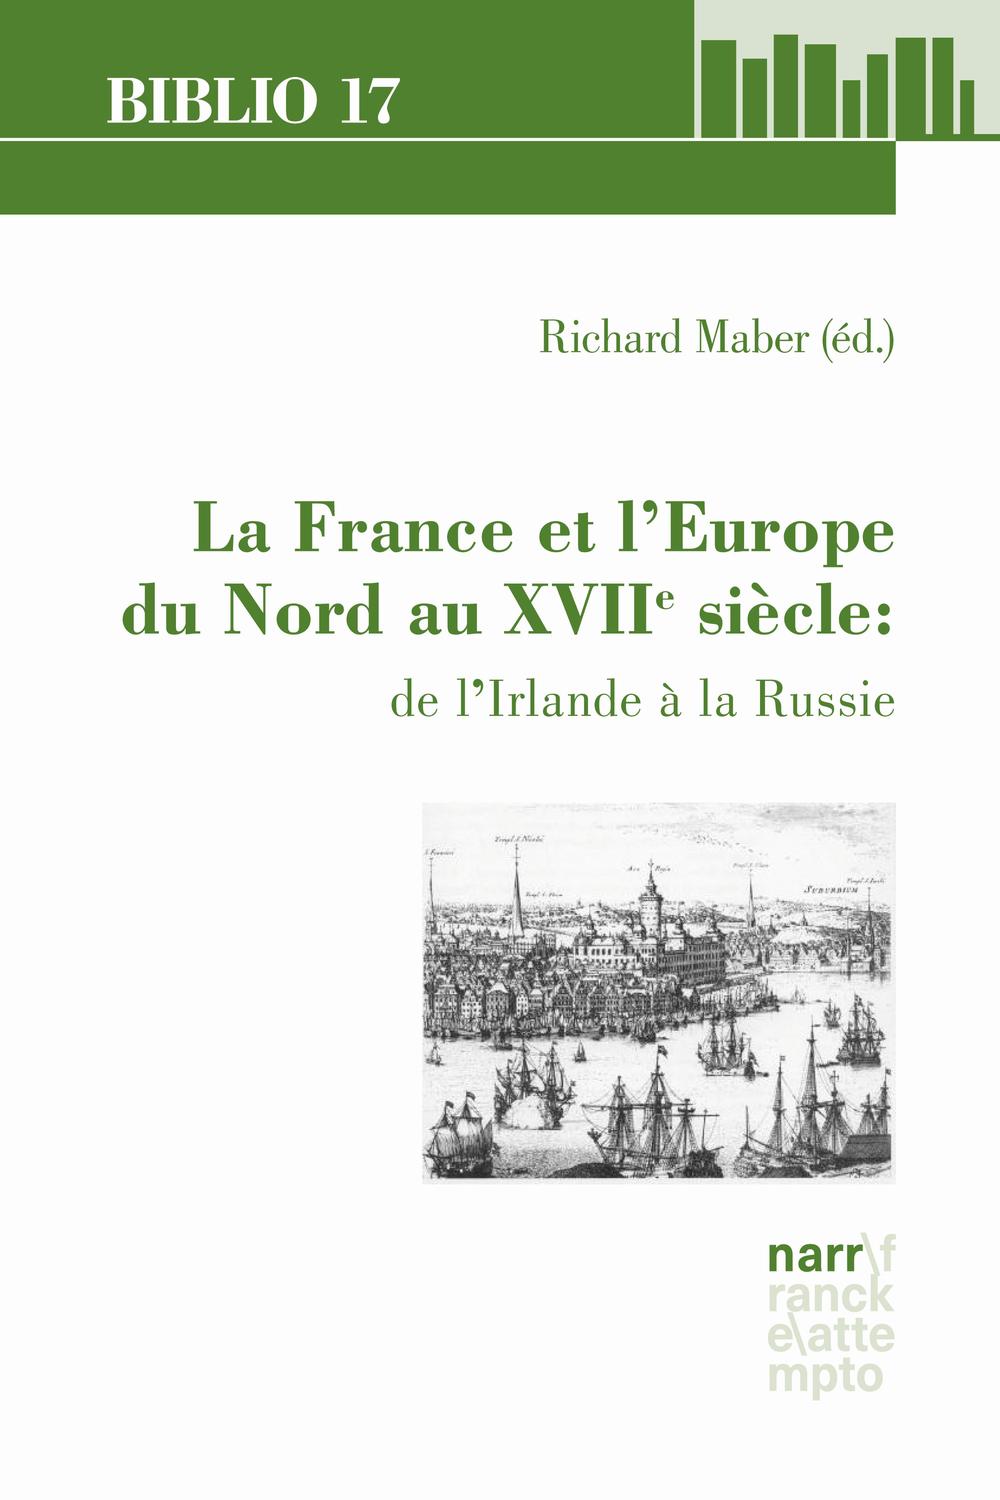 La France et l'Europe du Nord au XVIIe siècle: de l'Irlande à la Russie - Richard Maber